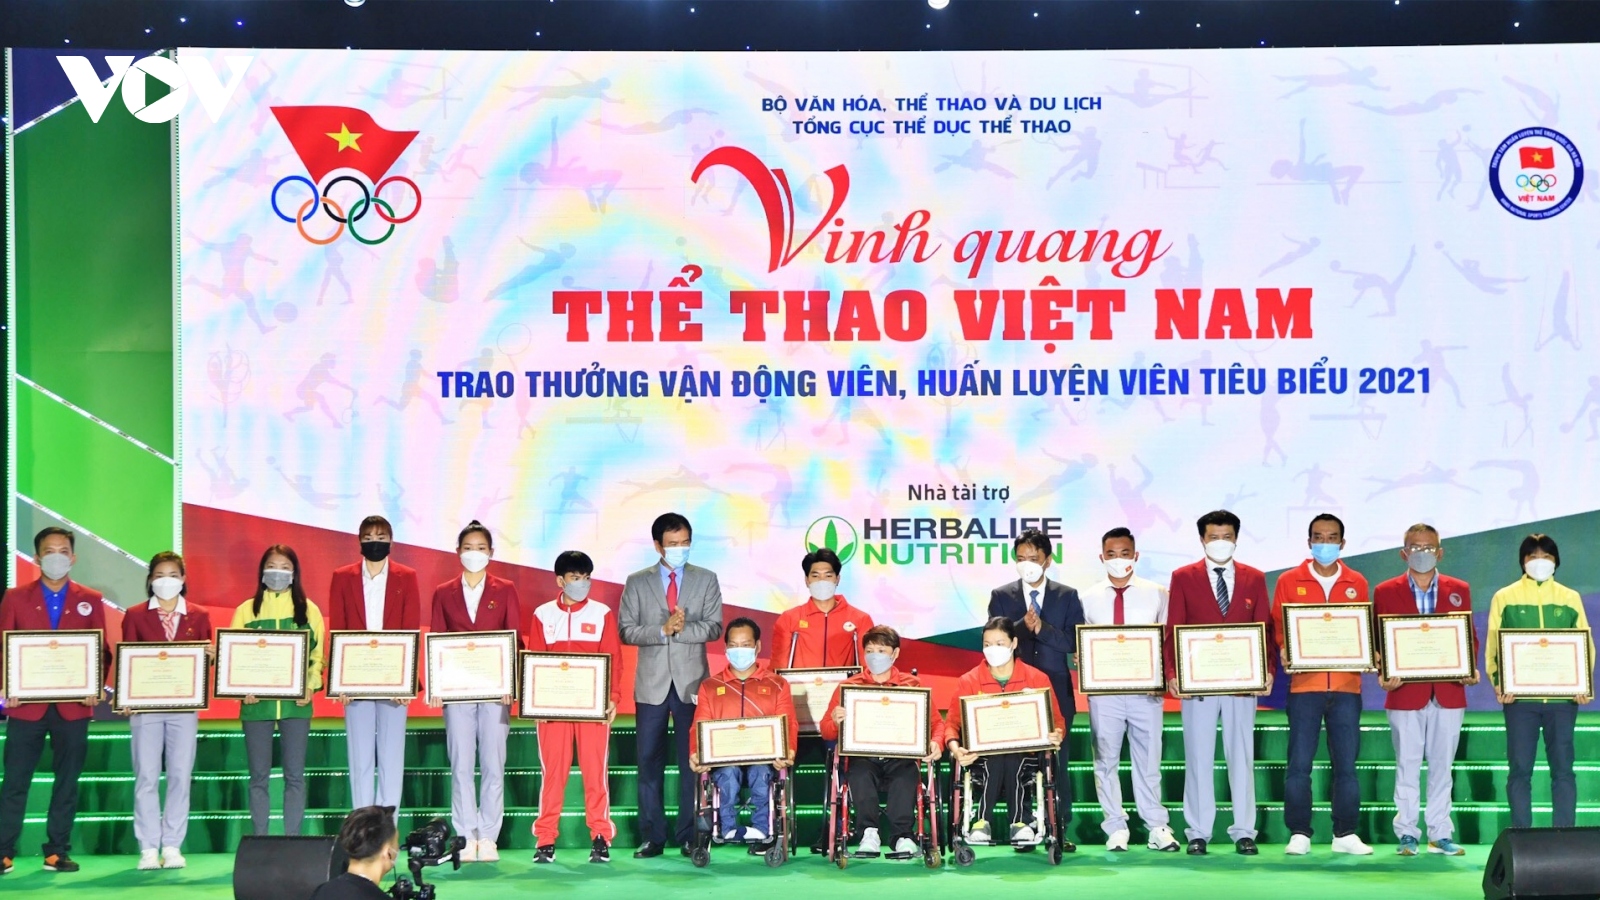 Thể thao Việt Nam và những bài toán cần giải để có sự thành công bền vững